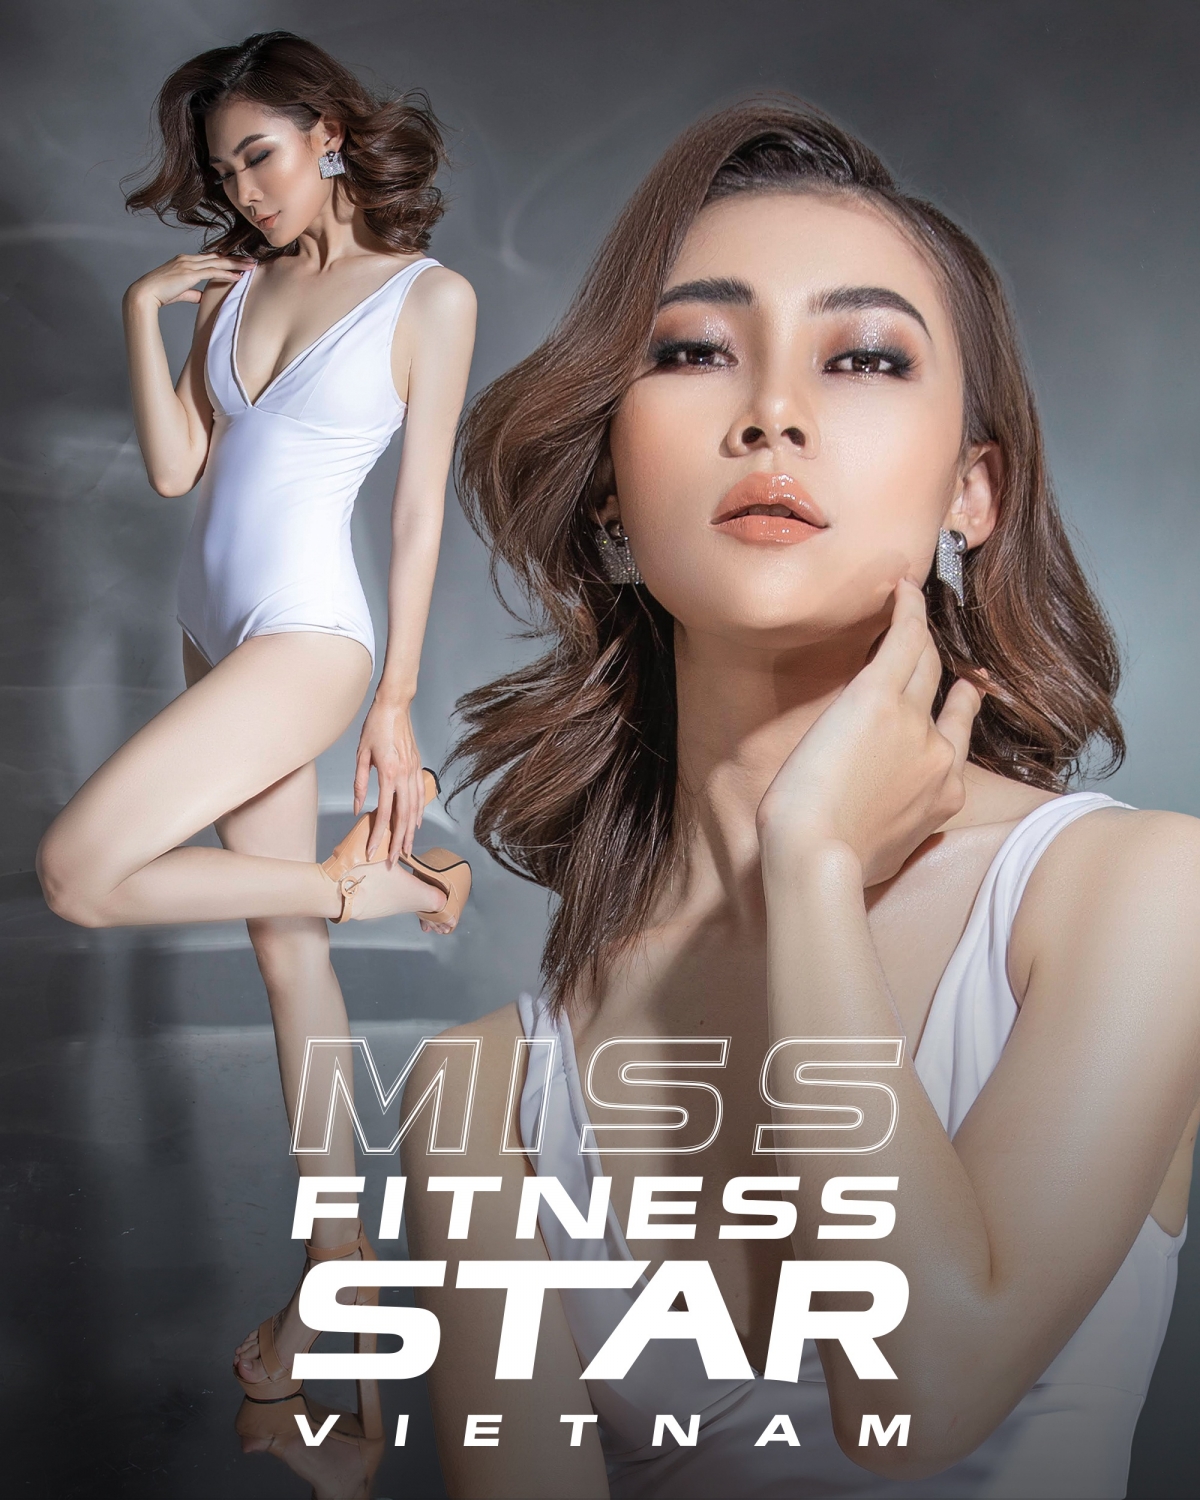 Nguyễn Minh Thu sở hữu số đo ba vòng 81-60-92, từng giành ngôi vị quán quân Fitness Sinh viên 2020. Đến với cuộc thi lần này, cô gái quê Lai Châu mong muốn ngày càng phát triển hơn trên hành trình trở thành người mẫu chuyên nghiệp.